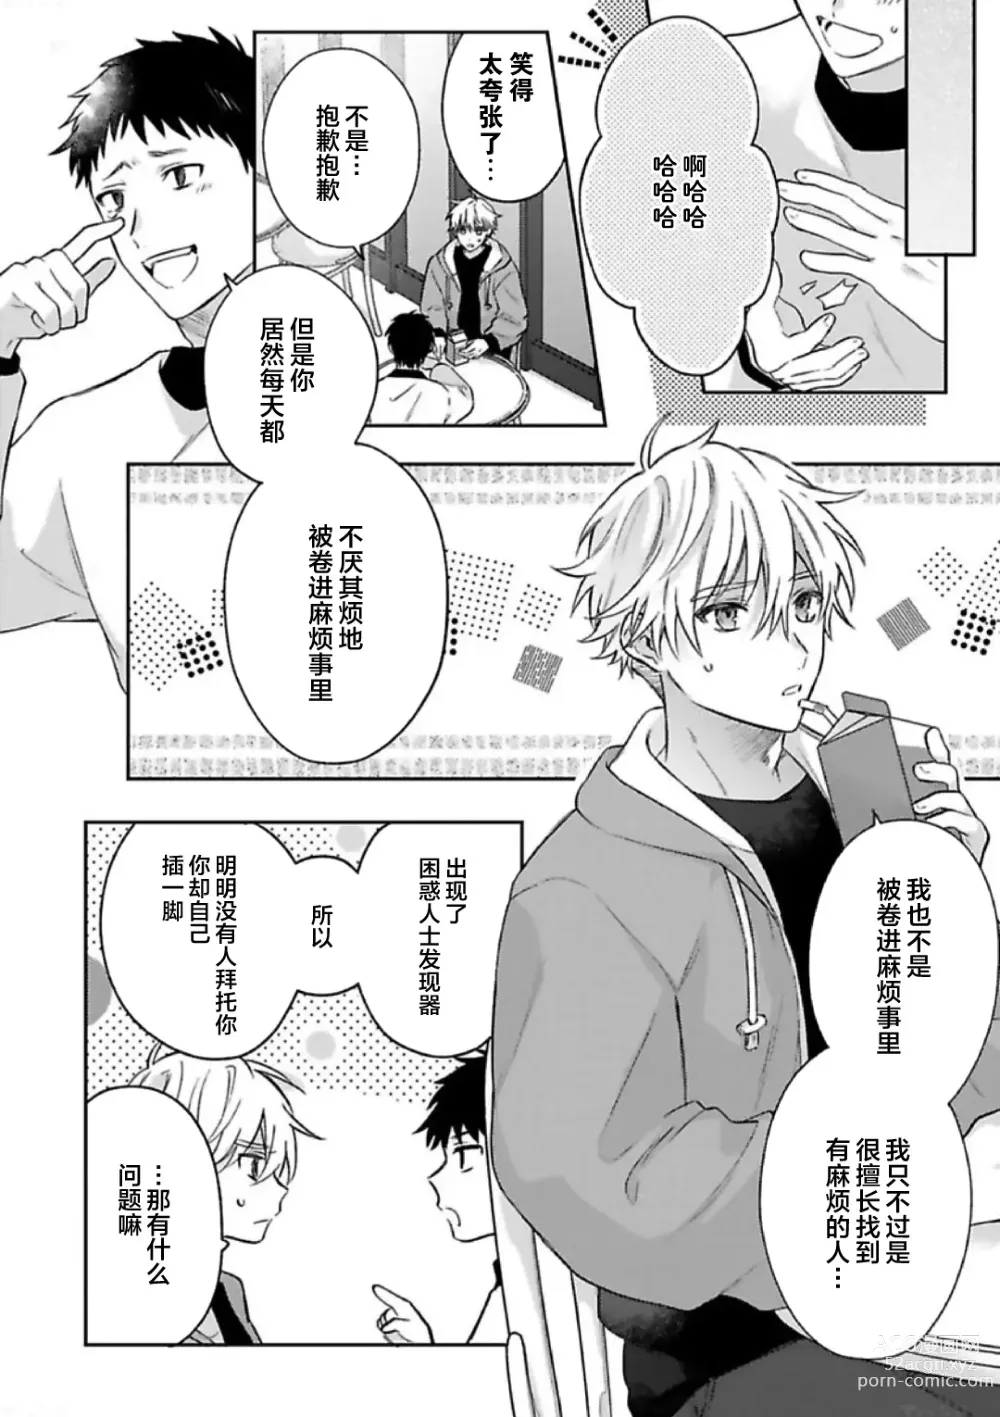 Page 8 of manga Sagashimonoha Kimidesuka｜你是我的所寻之物吗